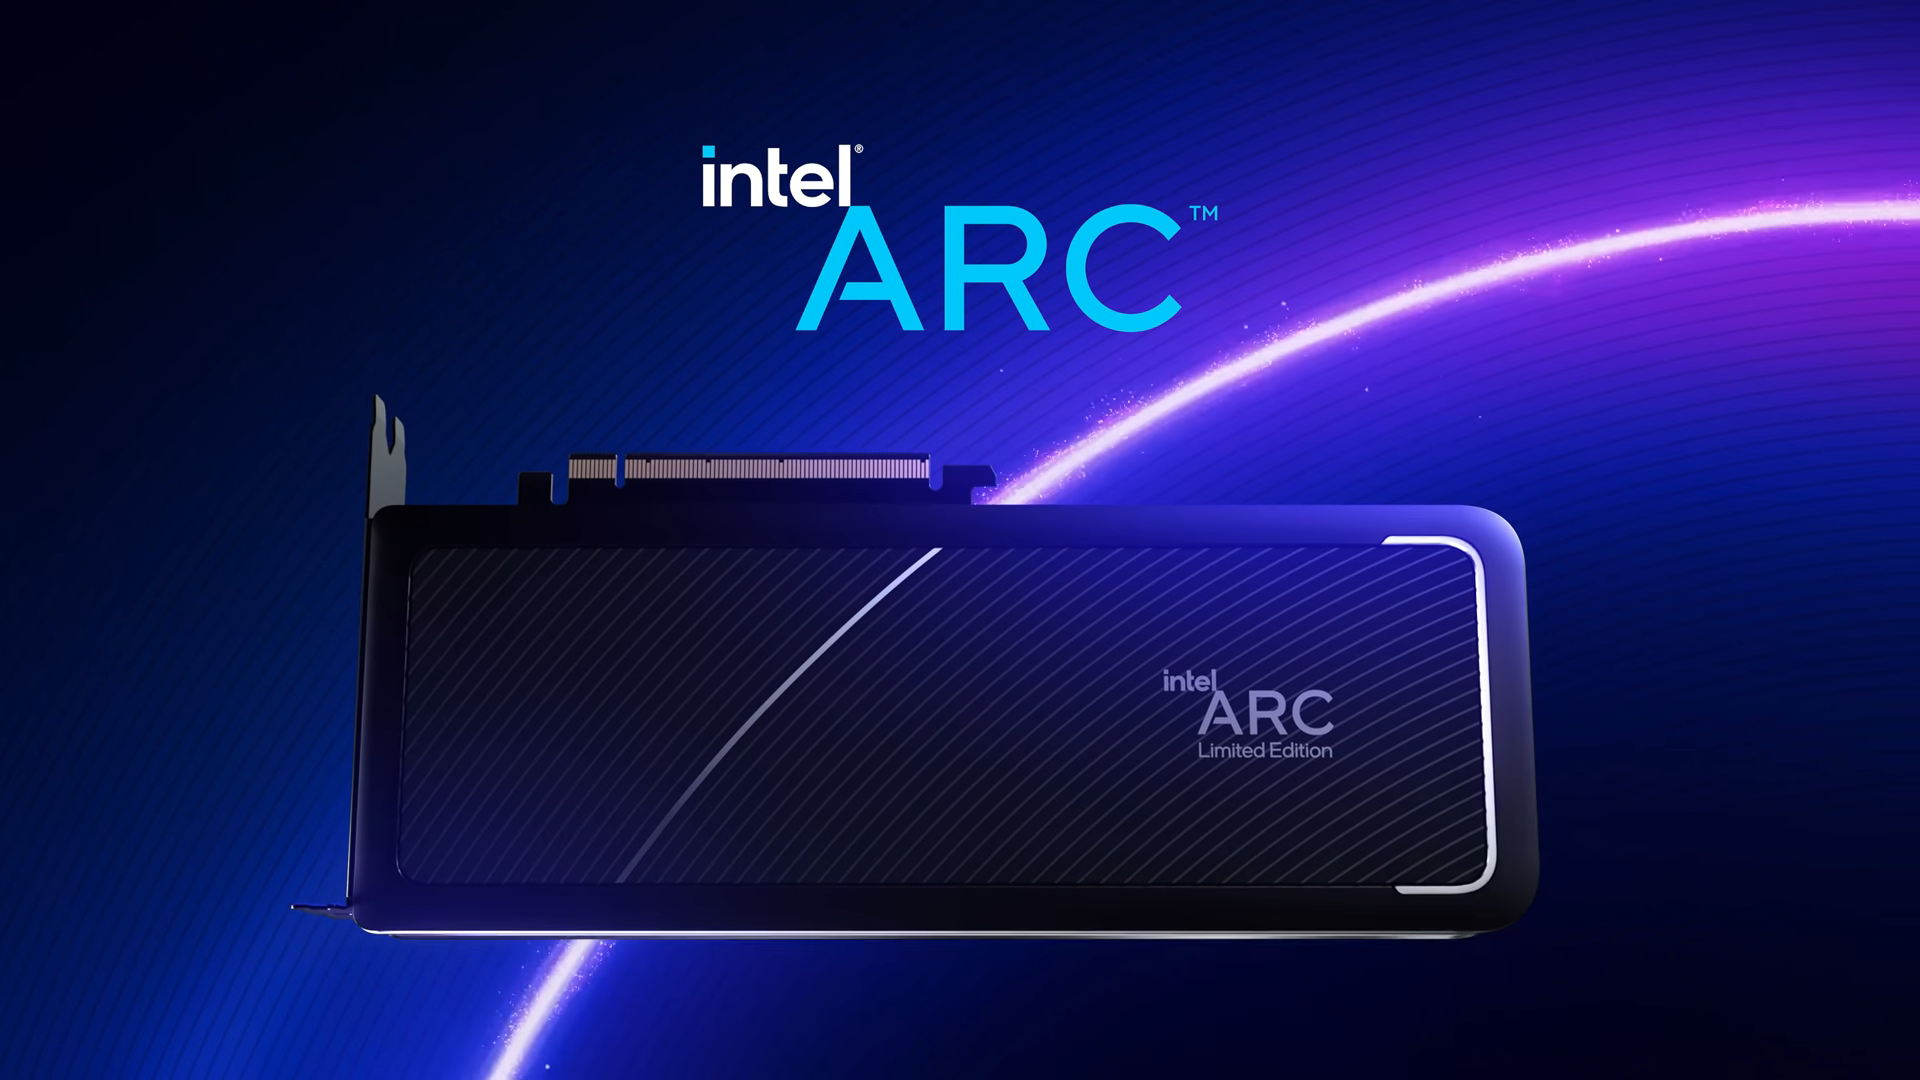 Immagine pubblicata in relazione al seguente contenuto: Intel pubblica il teaser della video card ARC A-Series Limited Edition | Nome immagine: news33140_Intel-Arc-A-Series-Limited-Edition_1.png